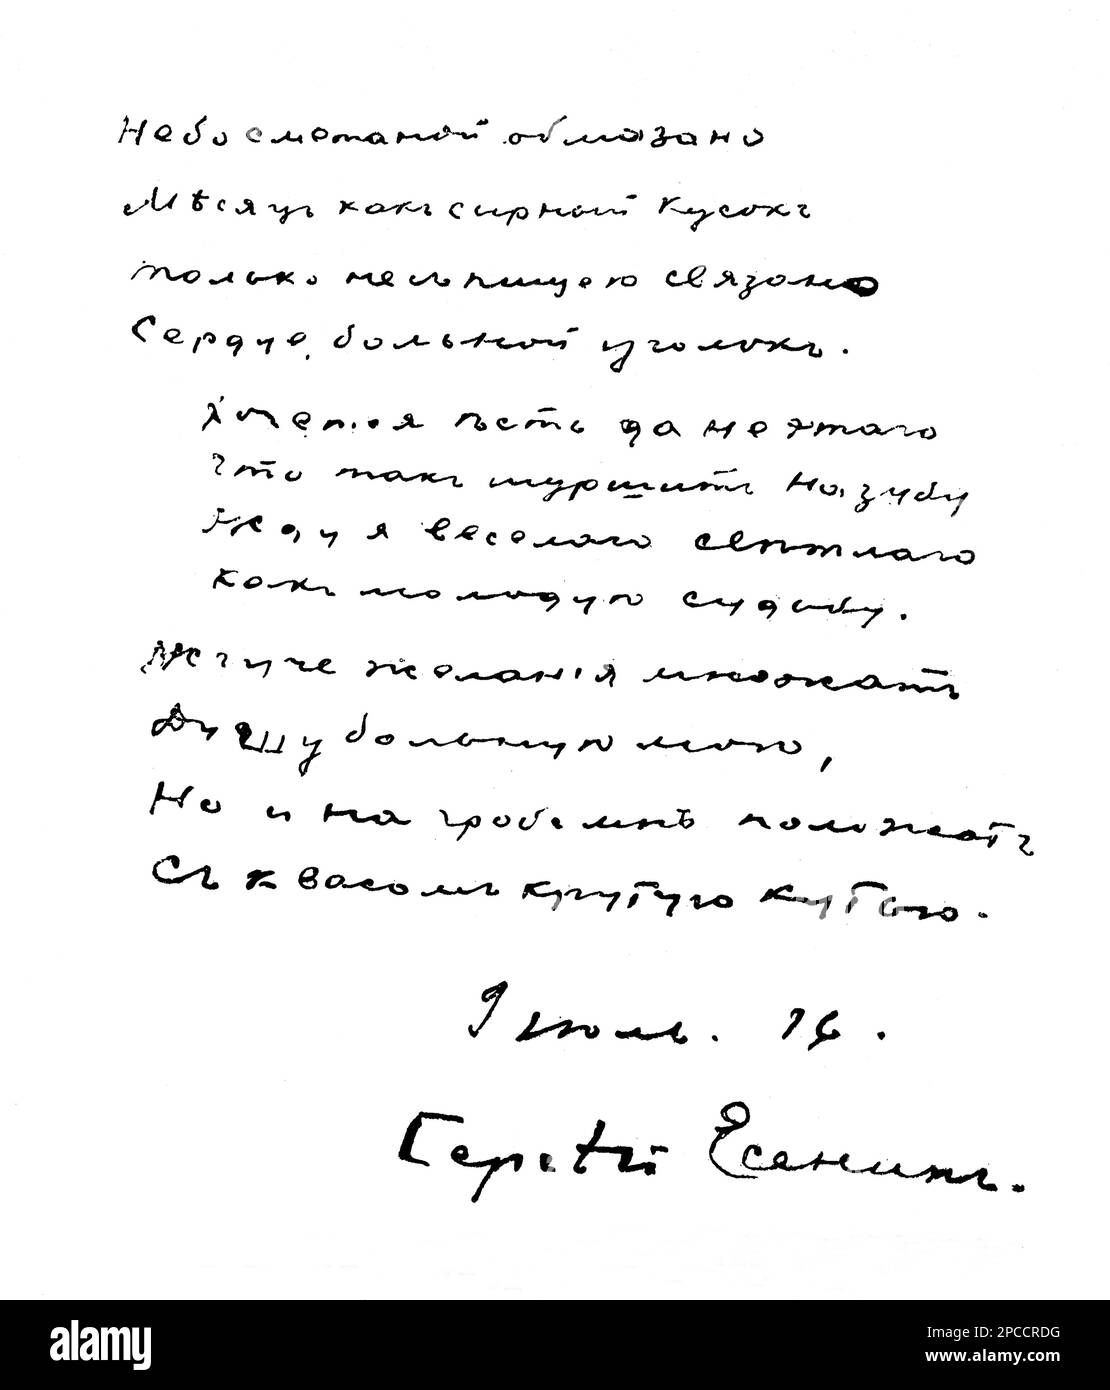 1925 , RUSSIA : l'ultima poesia del poeta SERGEJ ESENIN ( 1895 - 1925 ) scritta nel suo sangue. Esenin si suicidò nella stanza 5 , Hotel Angleterre , Pietrogrado il 28 dicembre 1925 . Marito della ballerina moderna CELEBRATA ISADORA DUNCAN dal 1922 al 1923 - POETA - POESIA - POESIA - LETTERATURA - YESSENNIN - LETTERATURA - letterato - GAY - omosessuale - omosessualità - Omosessualità - LGBT - Omosessuale - ritratto - Serghei - Sergei - Iesenin - Yesenin - Jesenin - suicidio - suicidio - suicida - maledetto - maudit - bohemien - autografo - autografo - firma - prima - Foto Stock